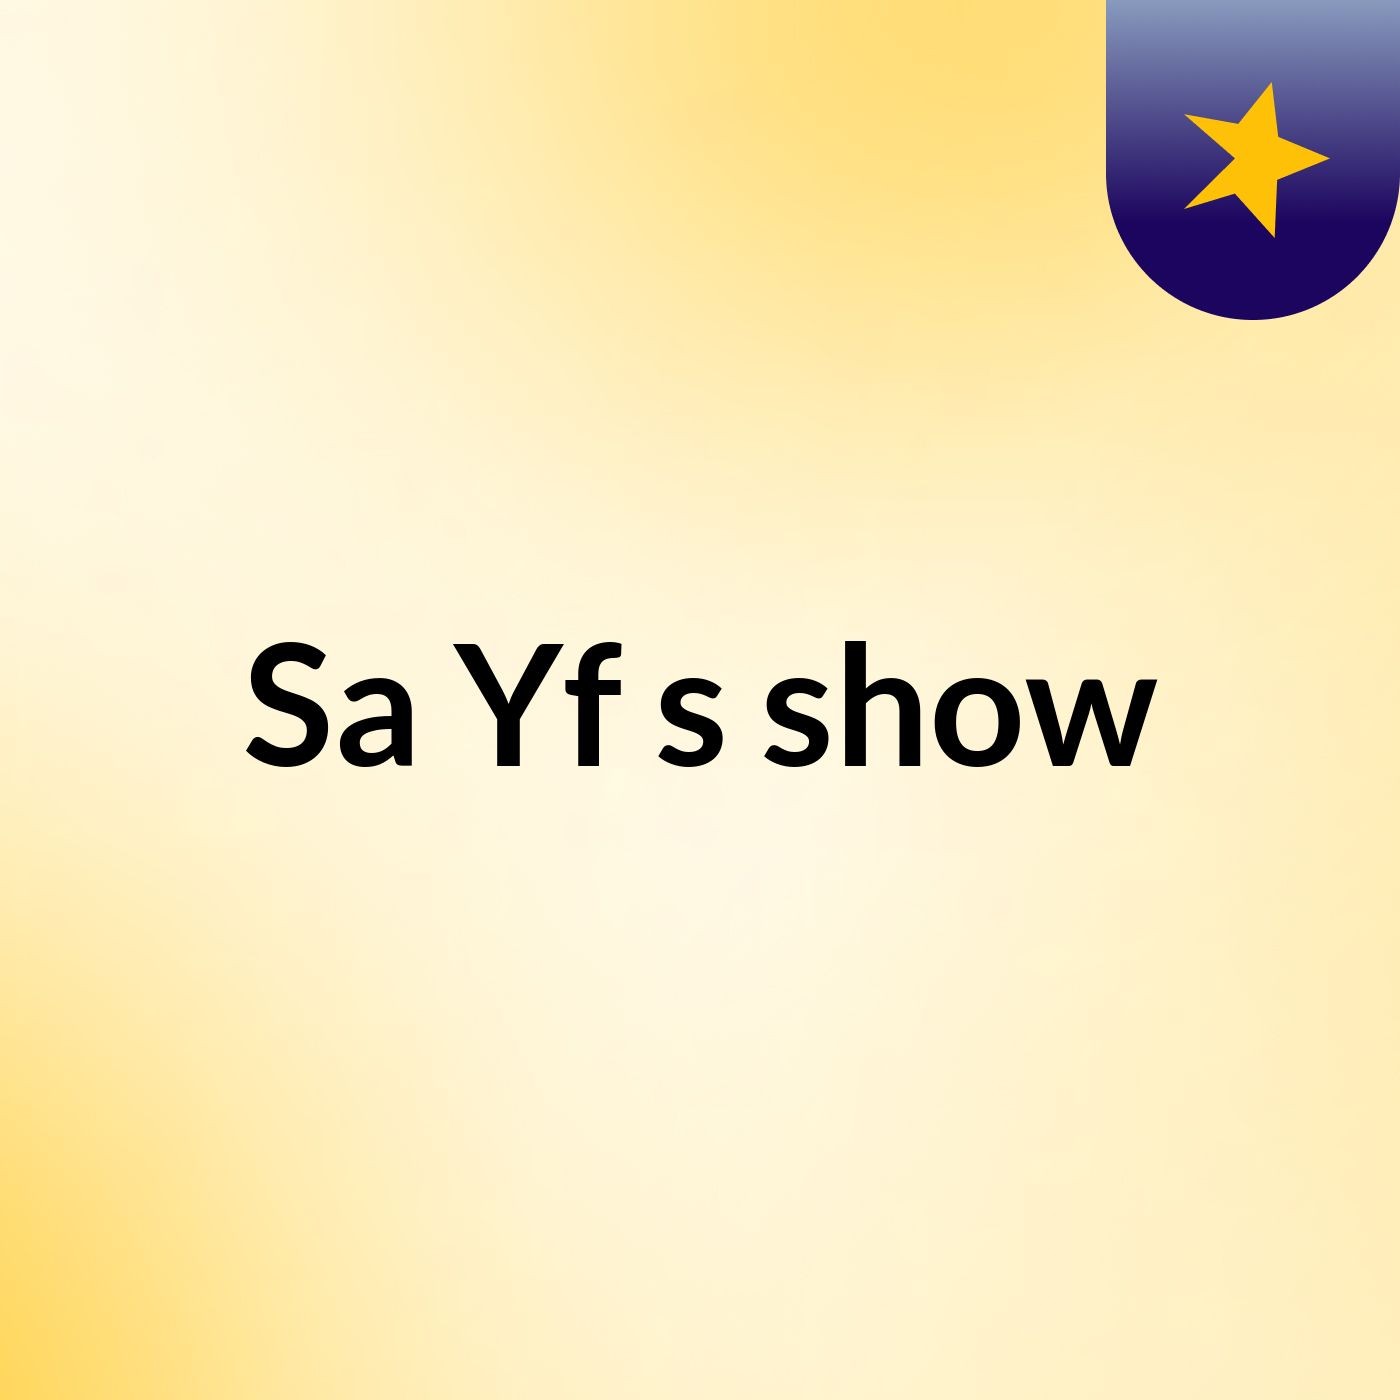 Sa Yf's show